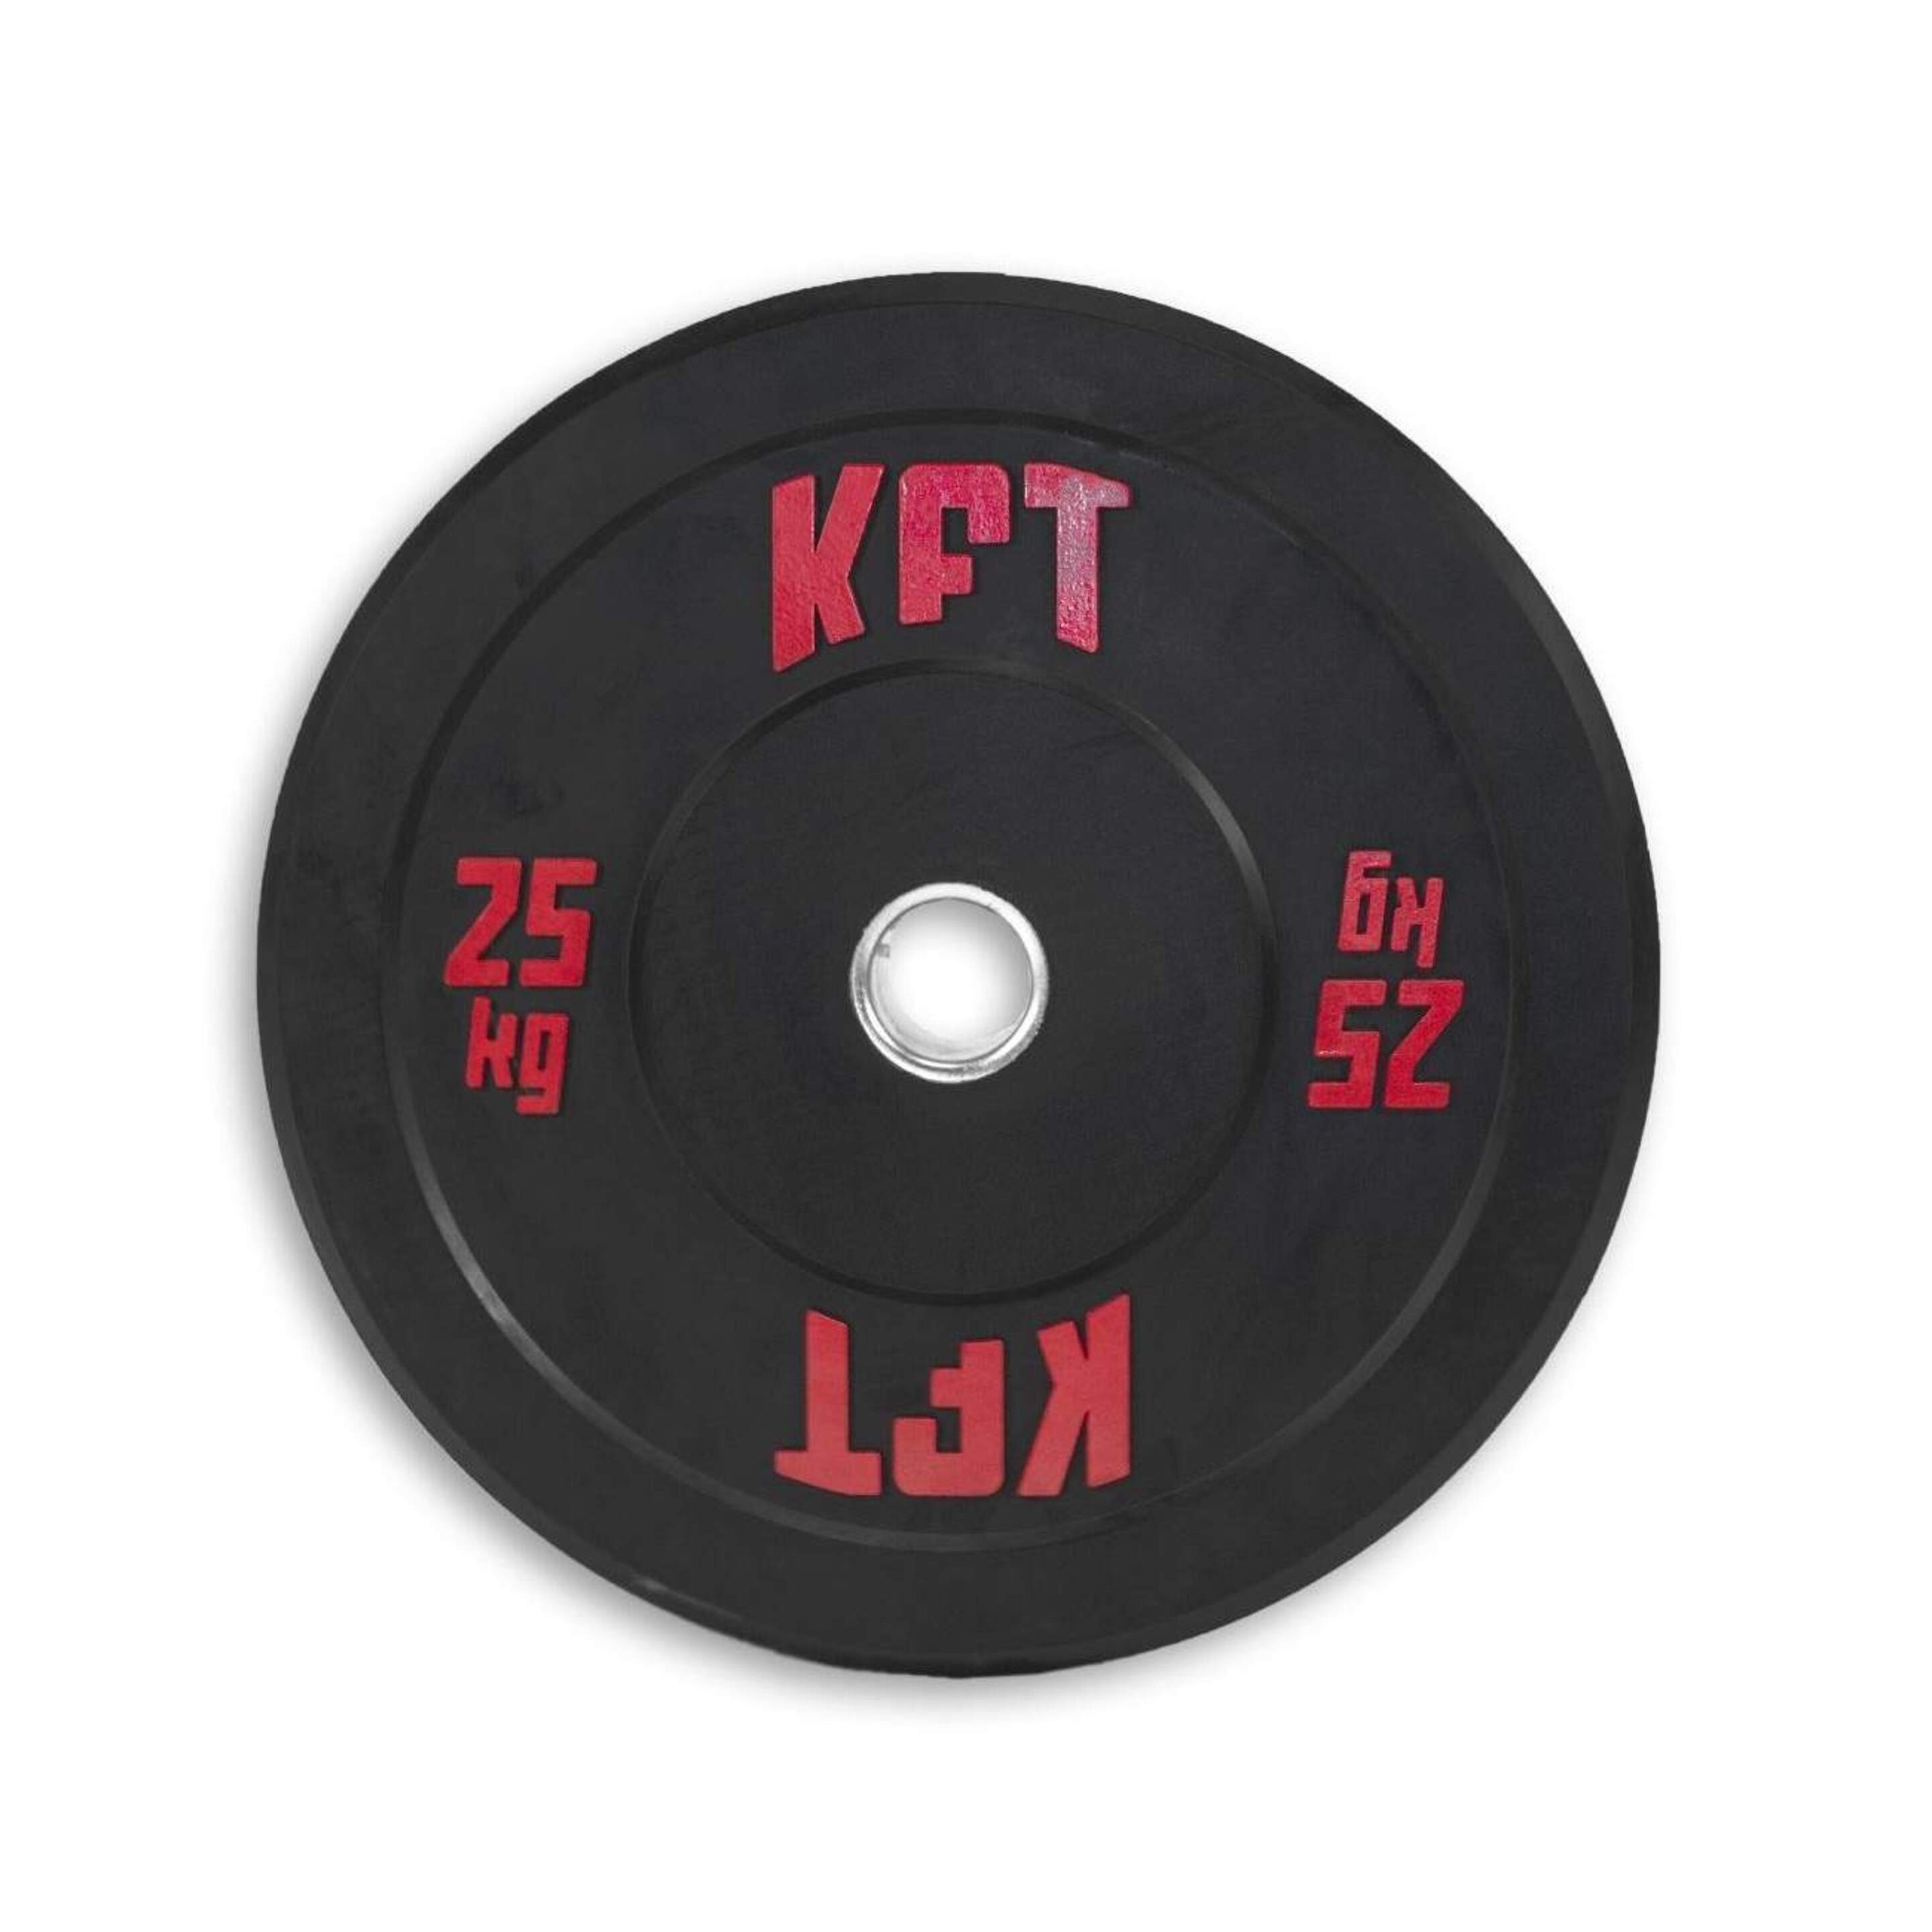 Disco Bumper Kft 25kg - negro-rojo - 